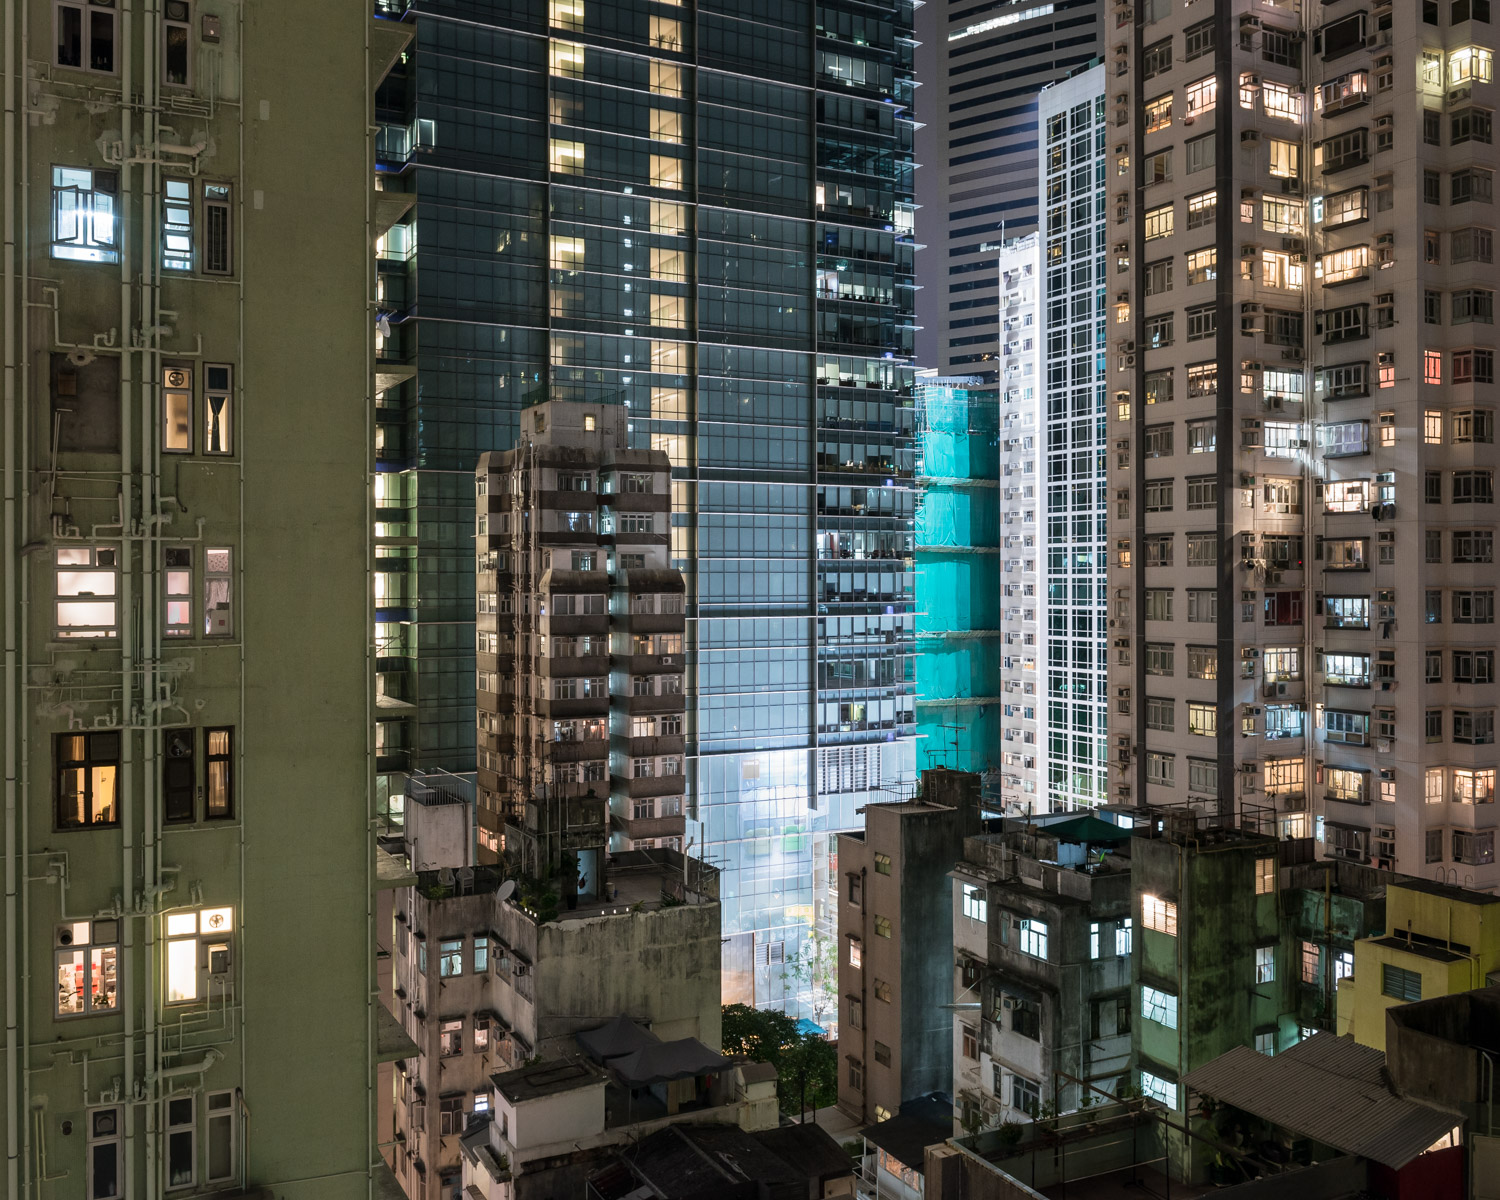  Wan Chai, Hong Kong, 2012 